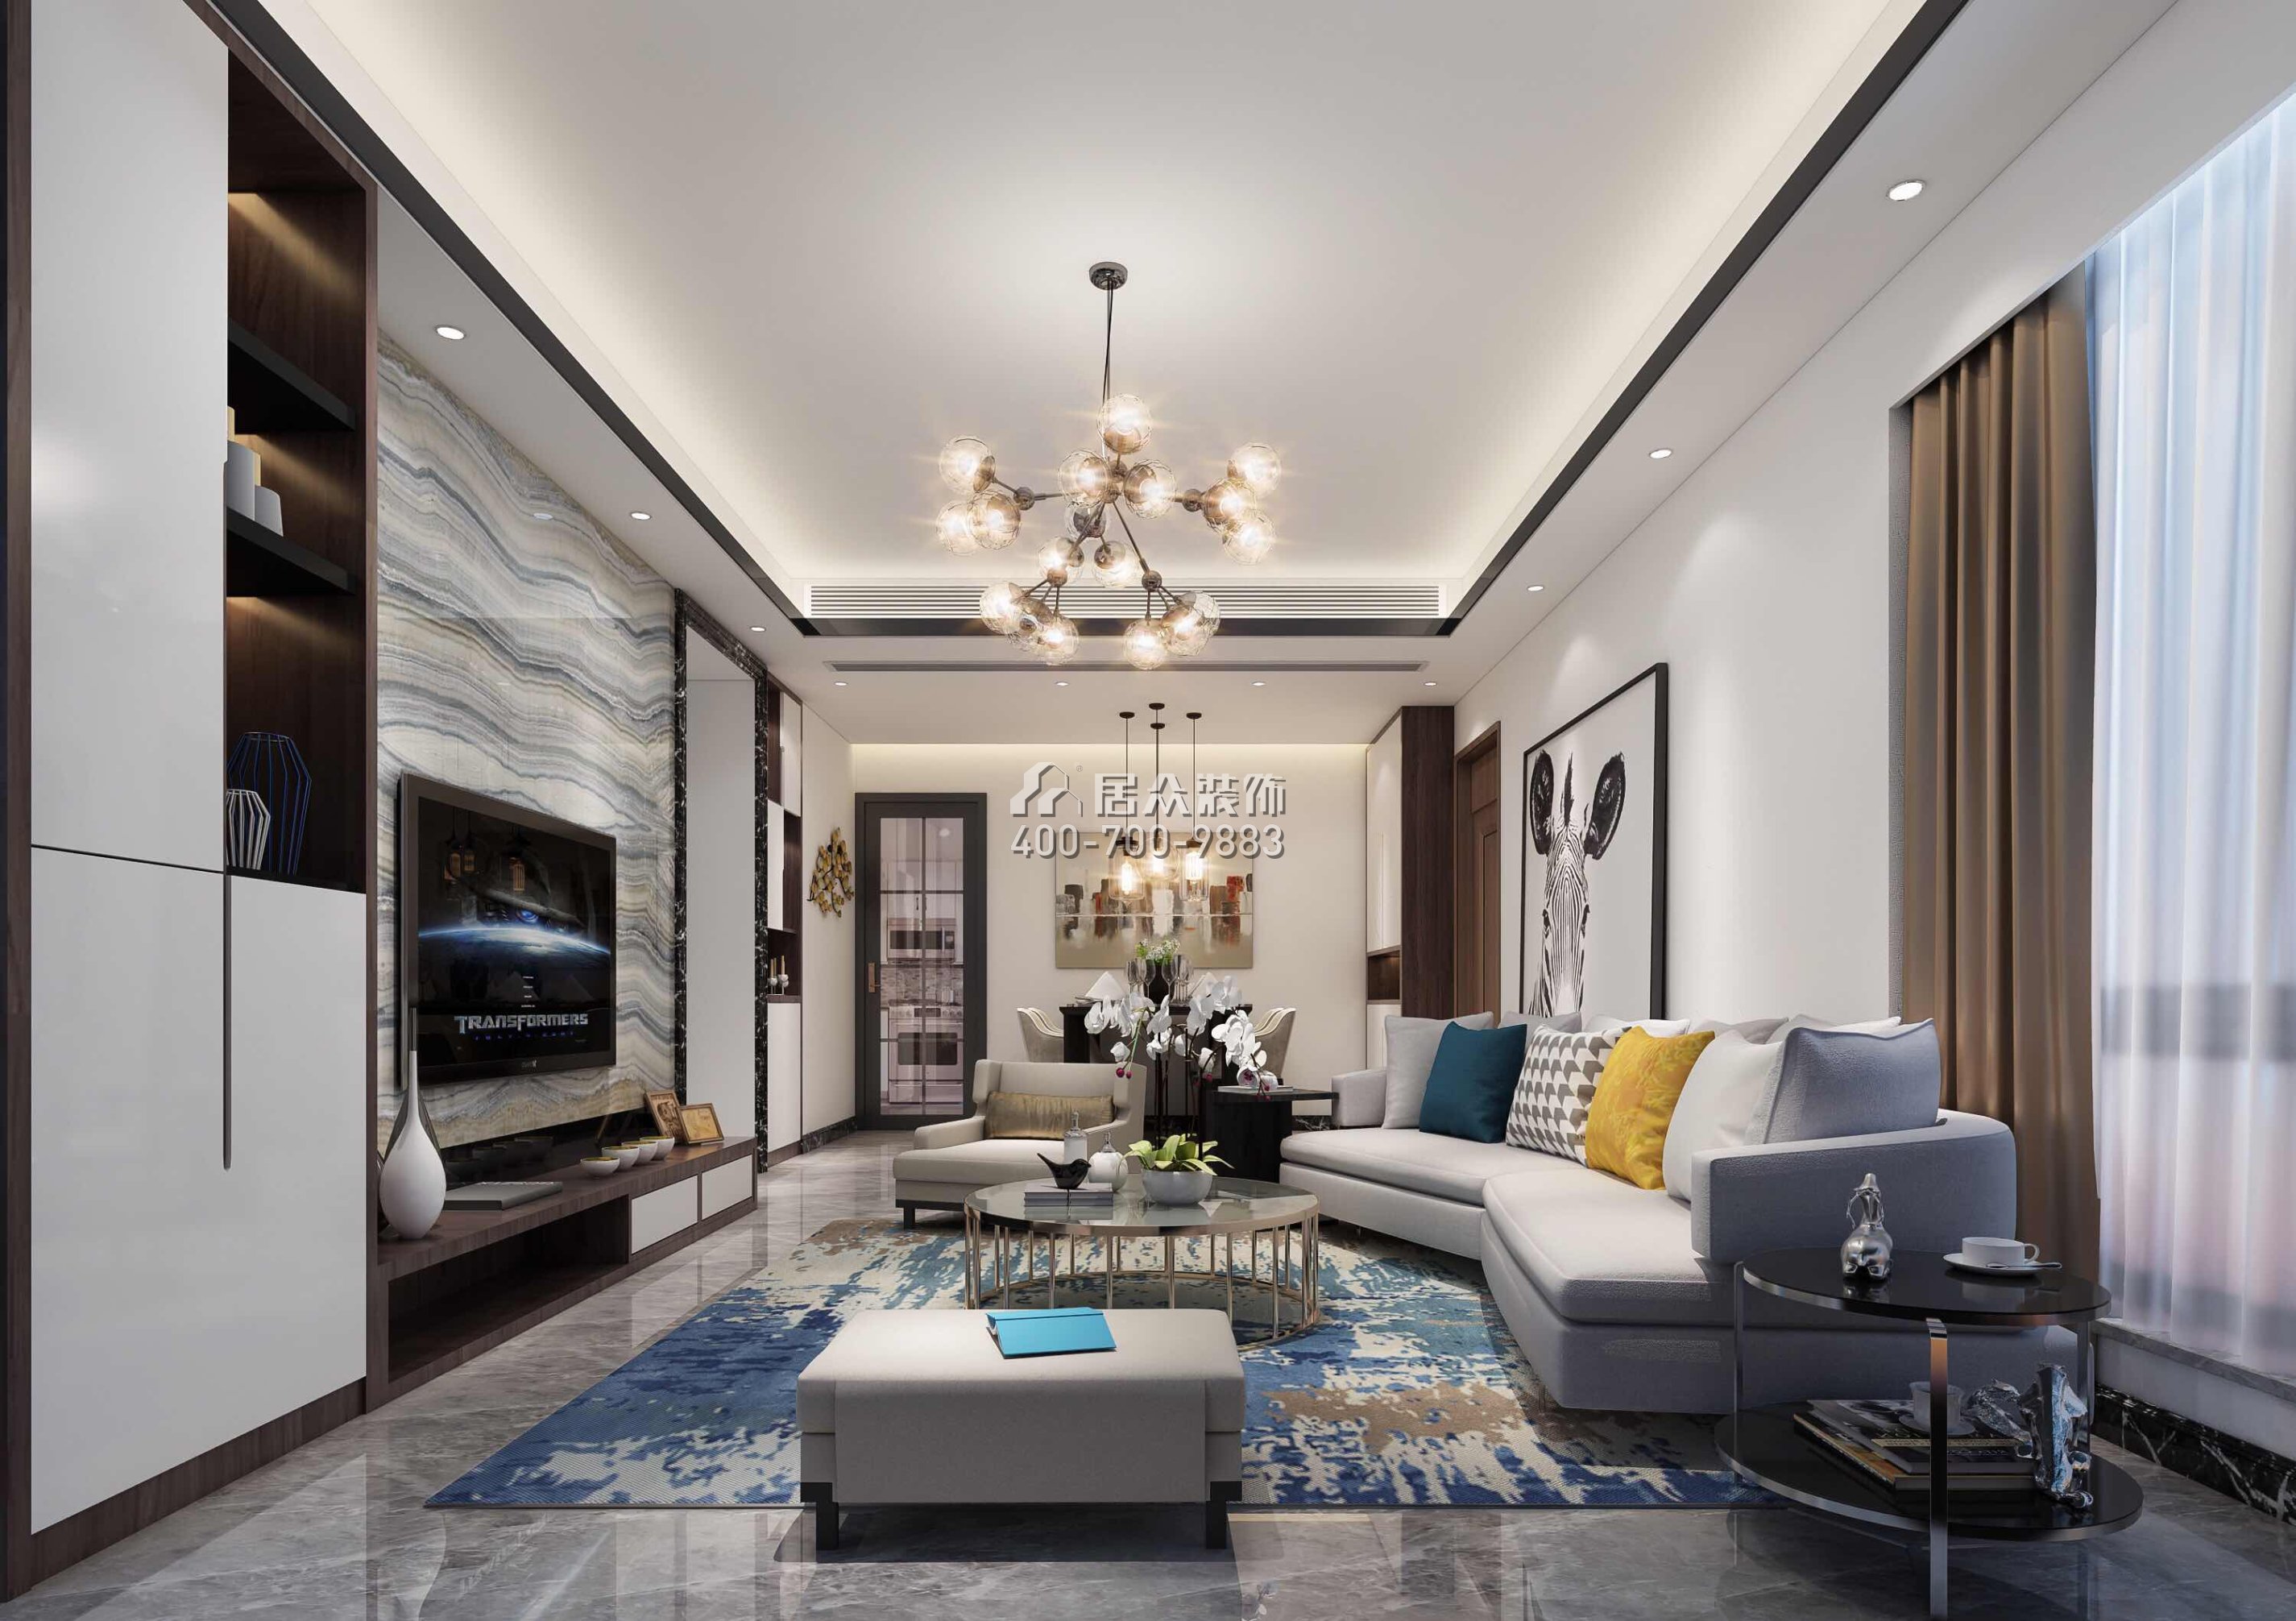 宝生midtown 88平方米现代简约风格平层户型客厅装修效果图